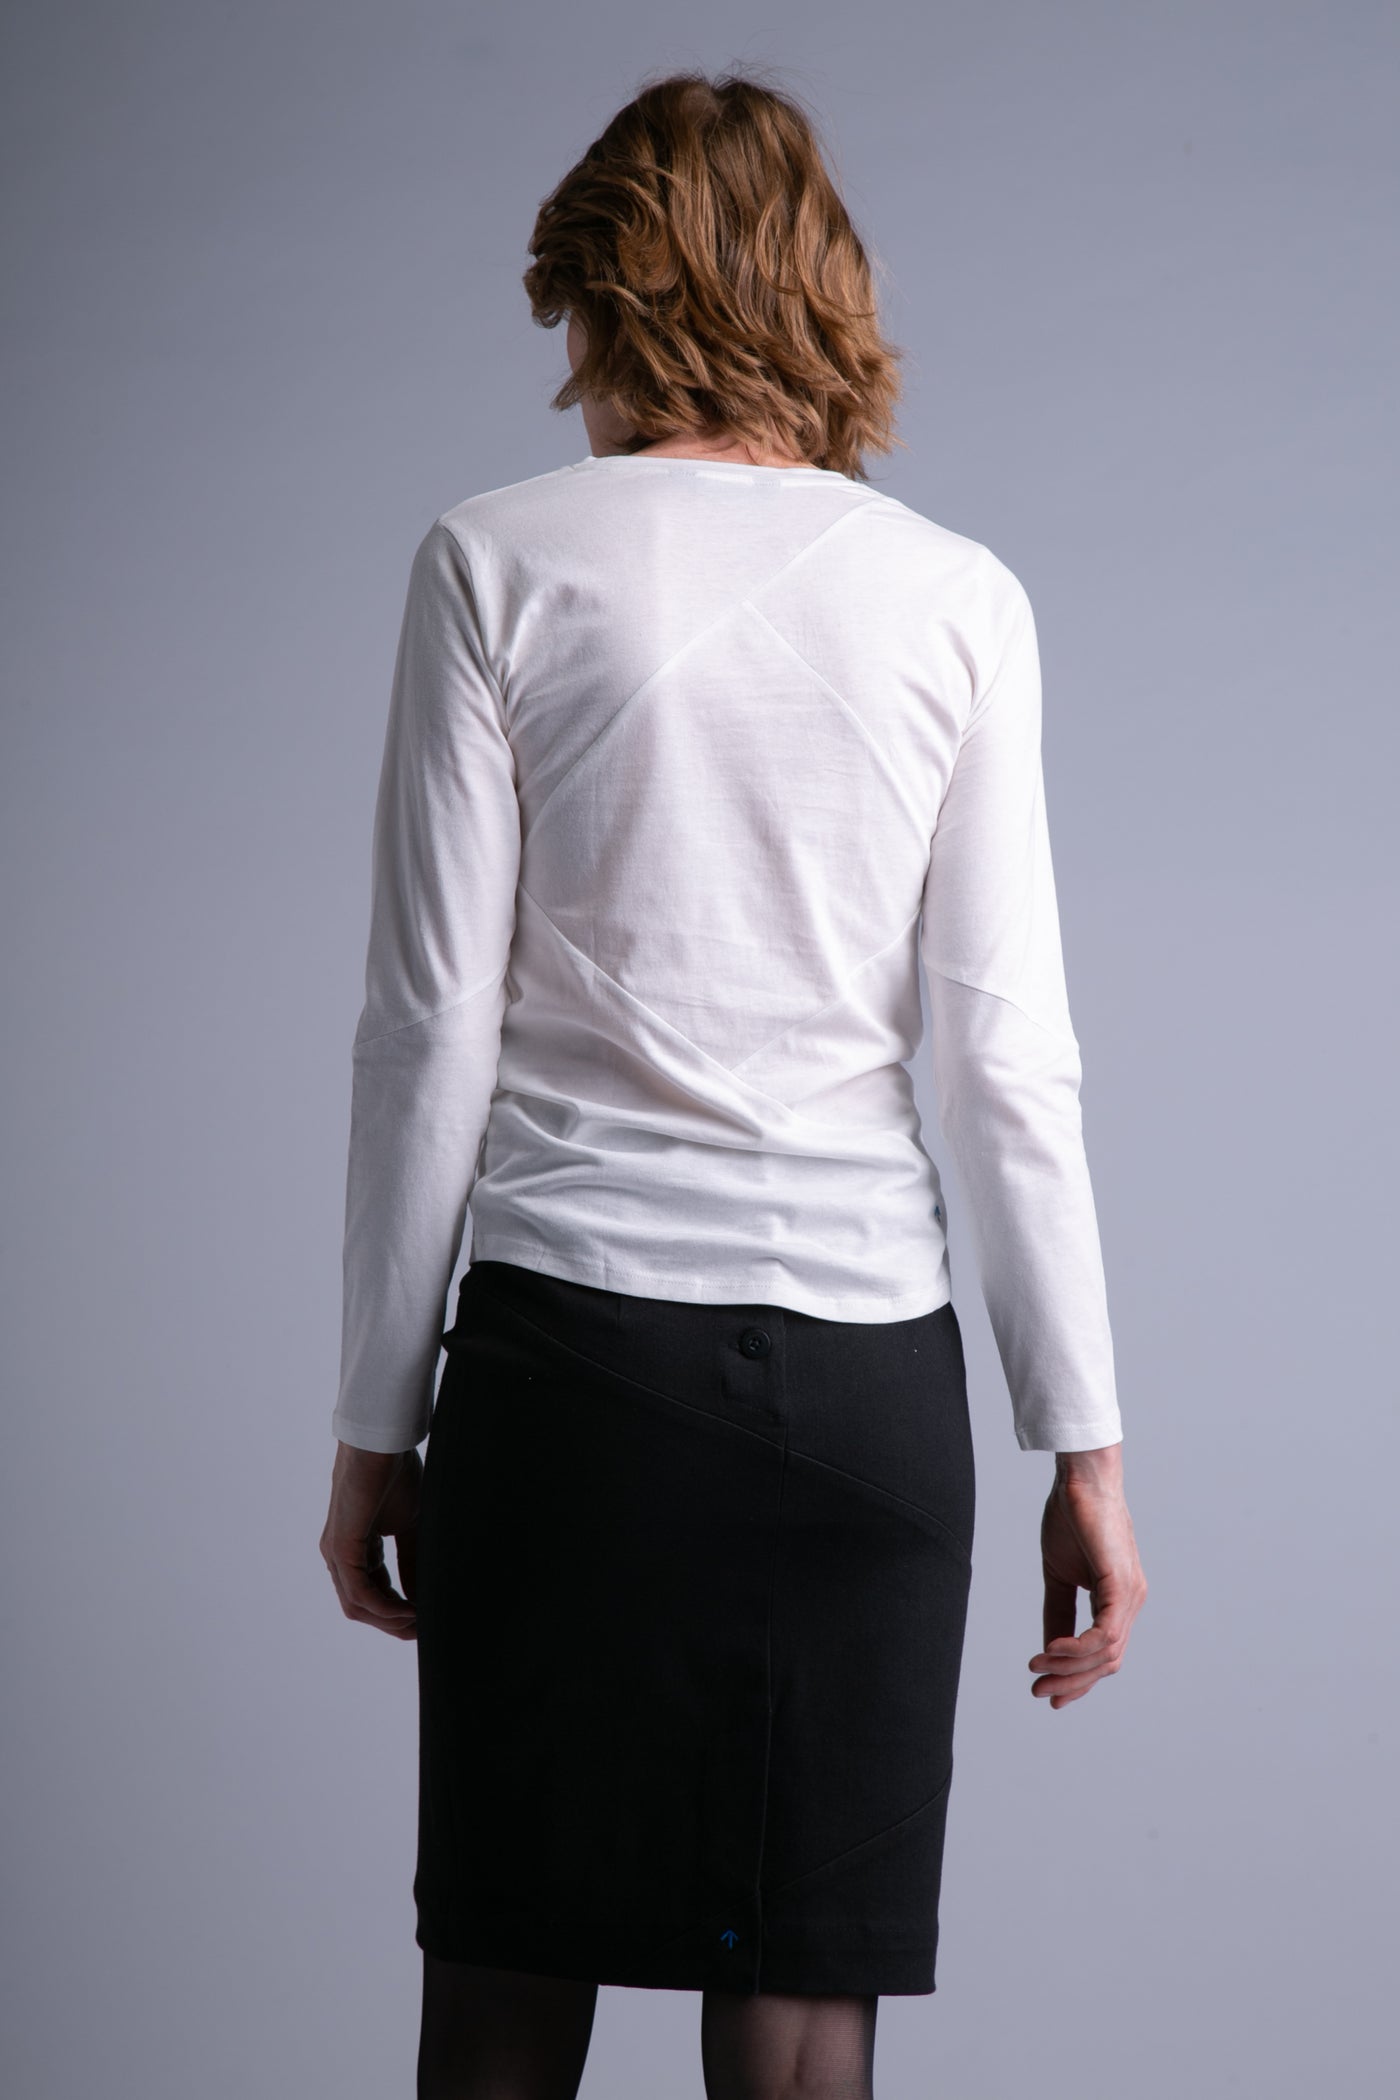 Up-Shirt für Damen, lange Ärmel | Weiß, dunkelgrau